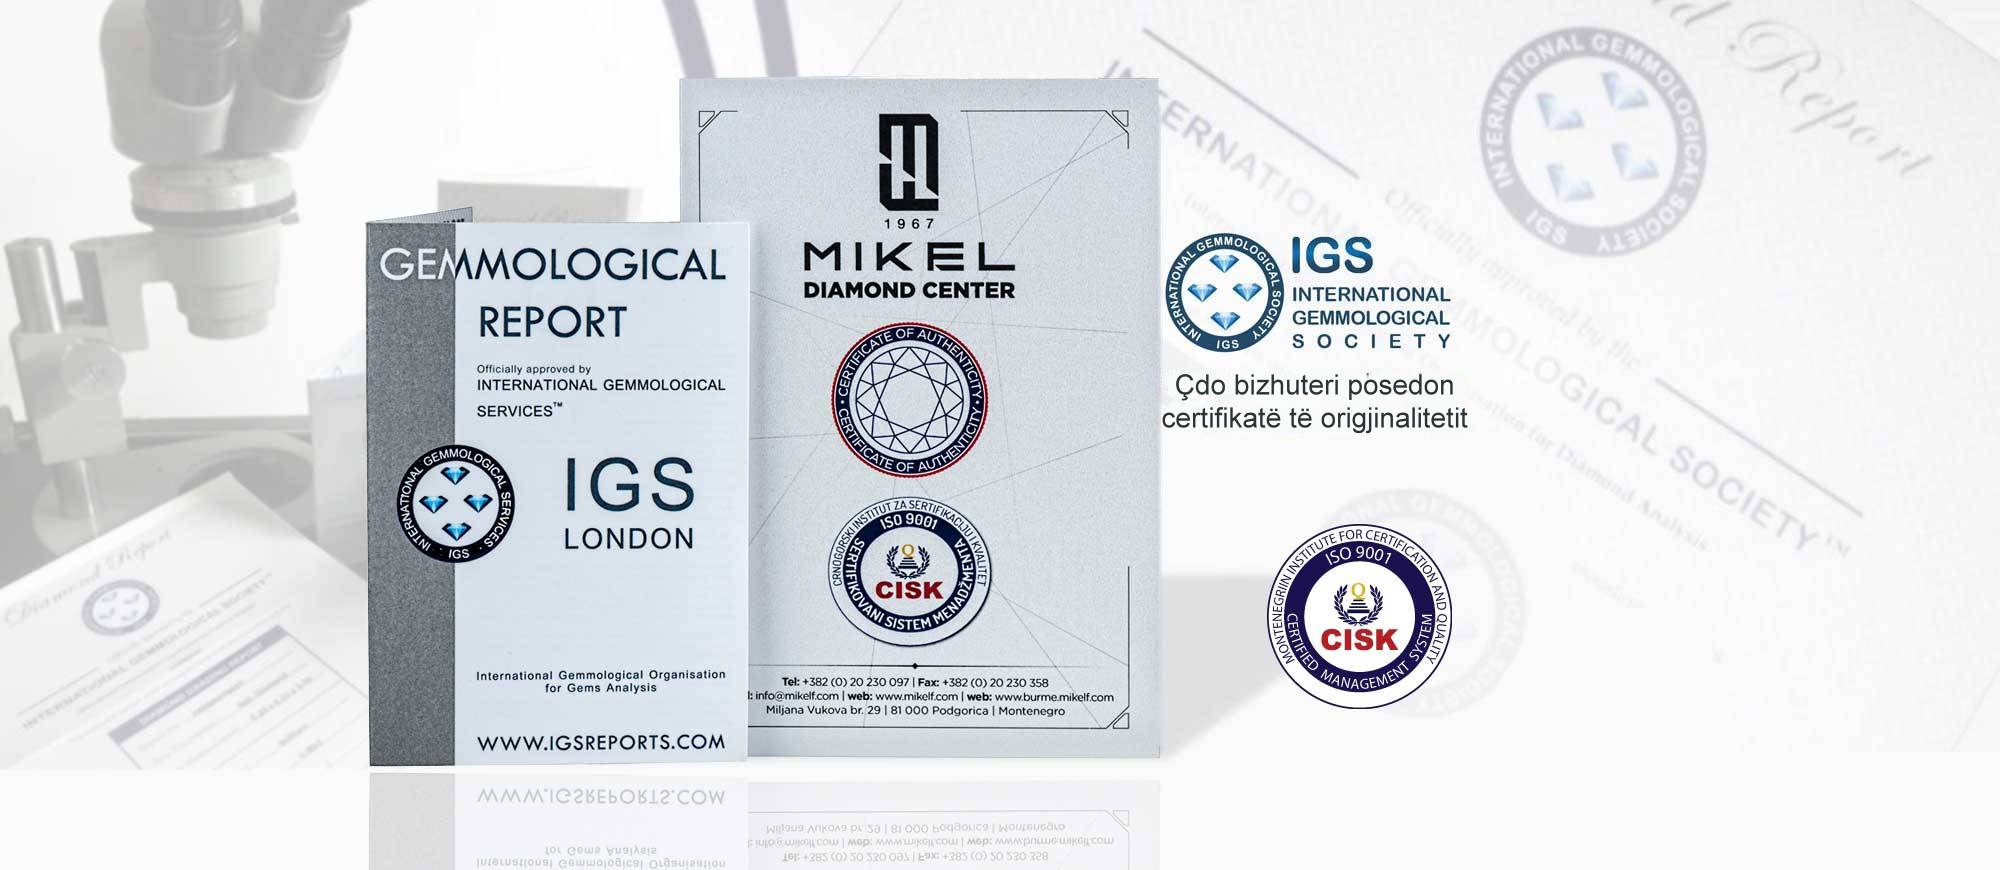 Qendra Mikel F Diamond zotëron certifikatat e origjinalitetit për të gjitha bizhuteritë që ofron.